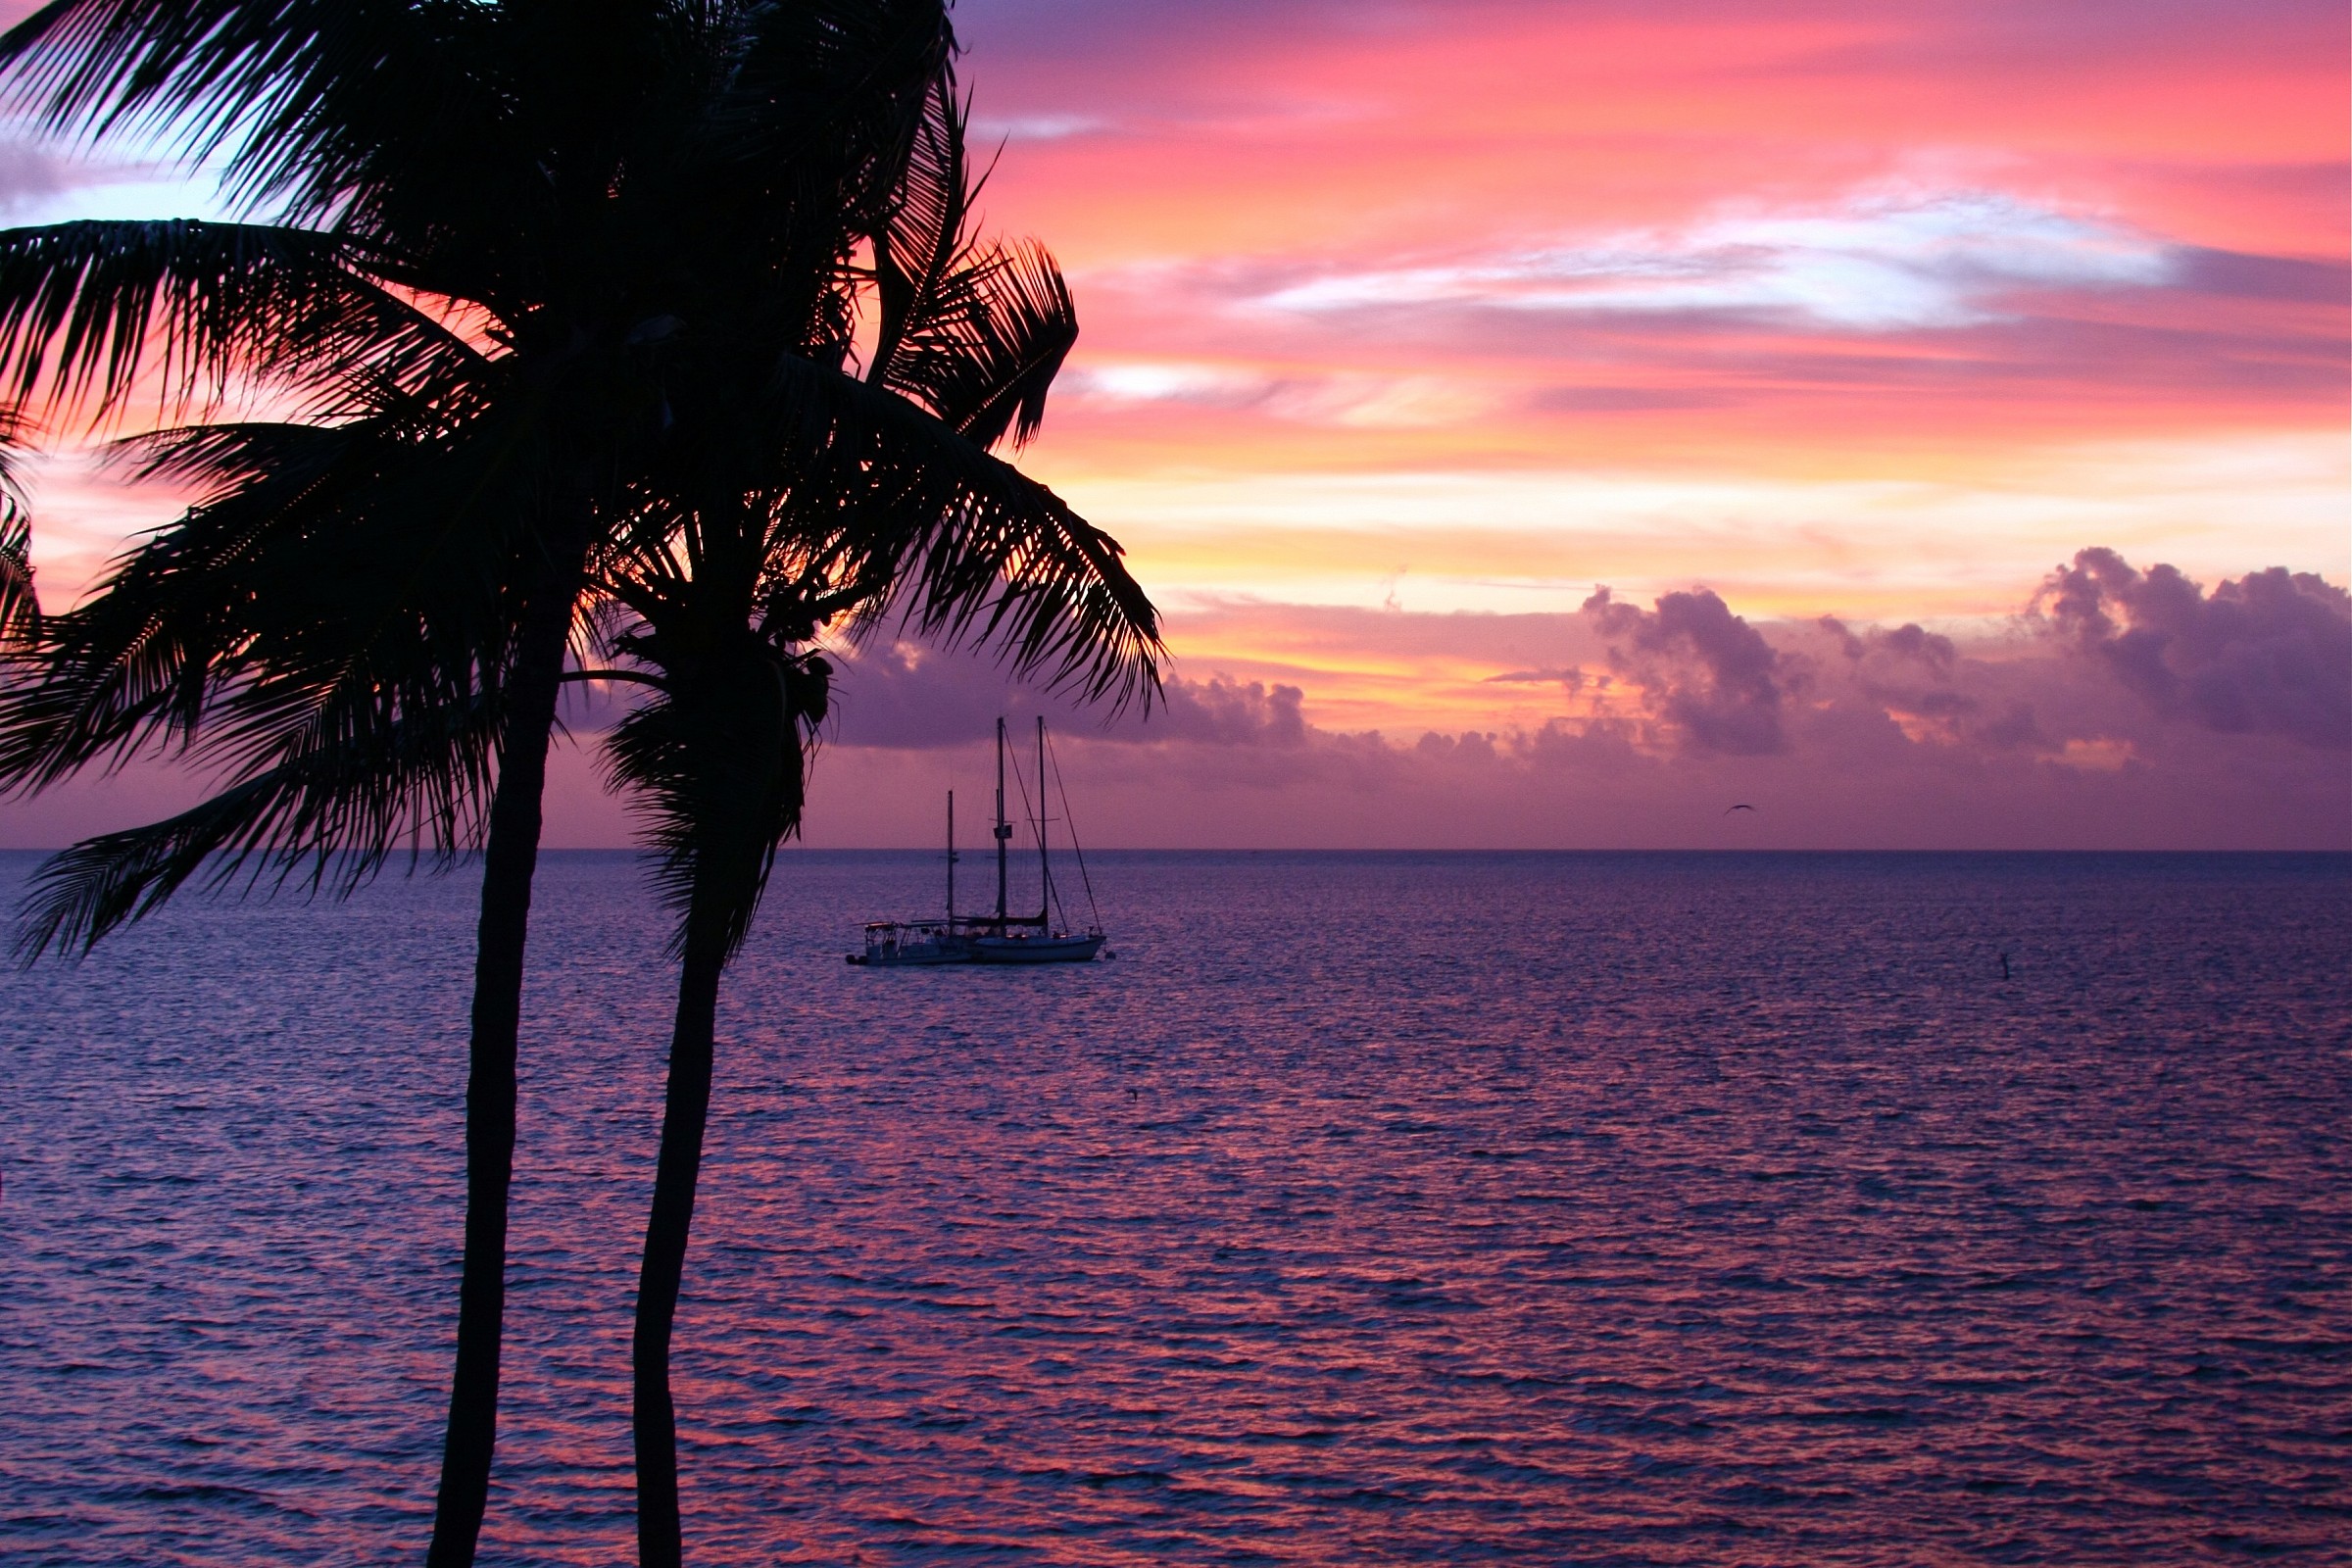 Islamorada - Florida Keys...